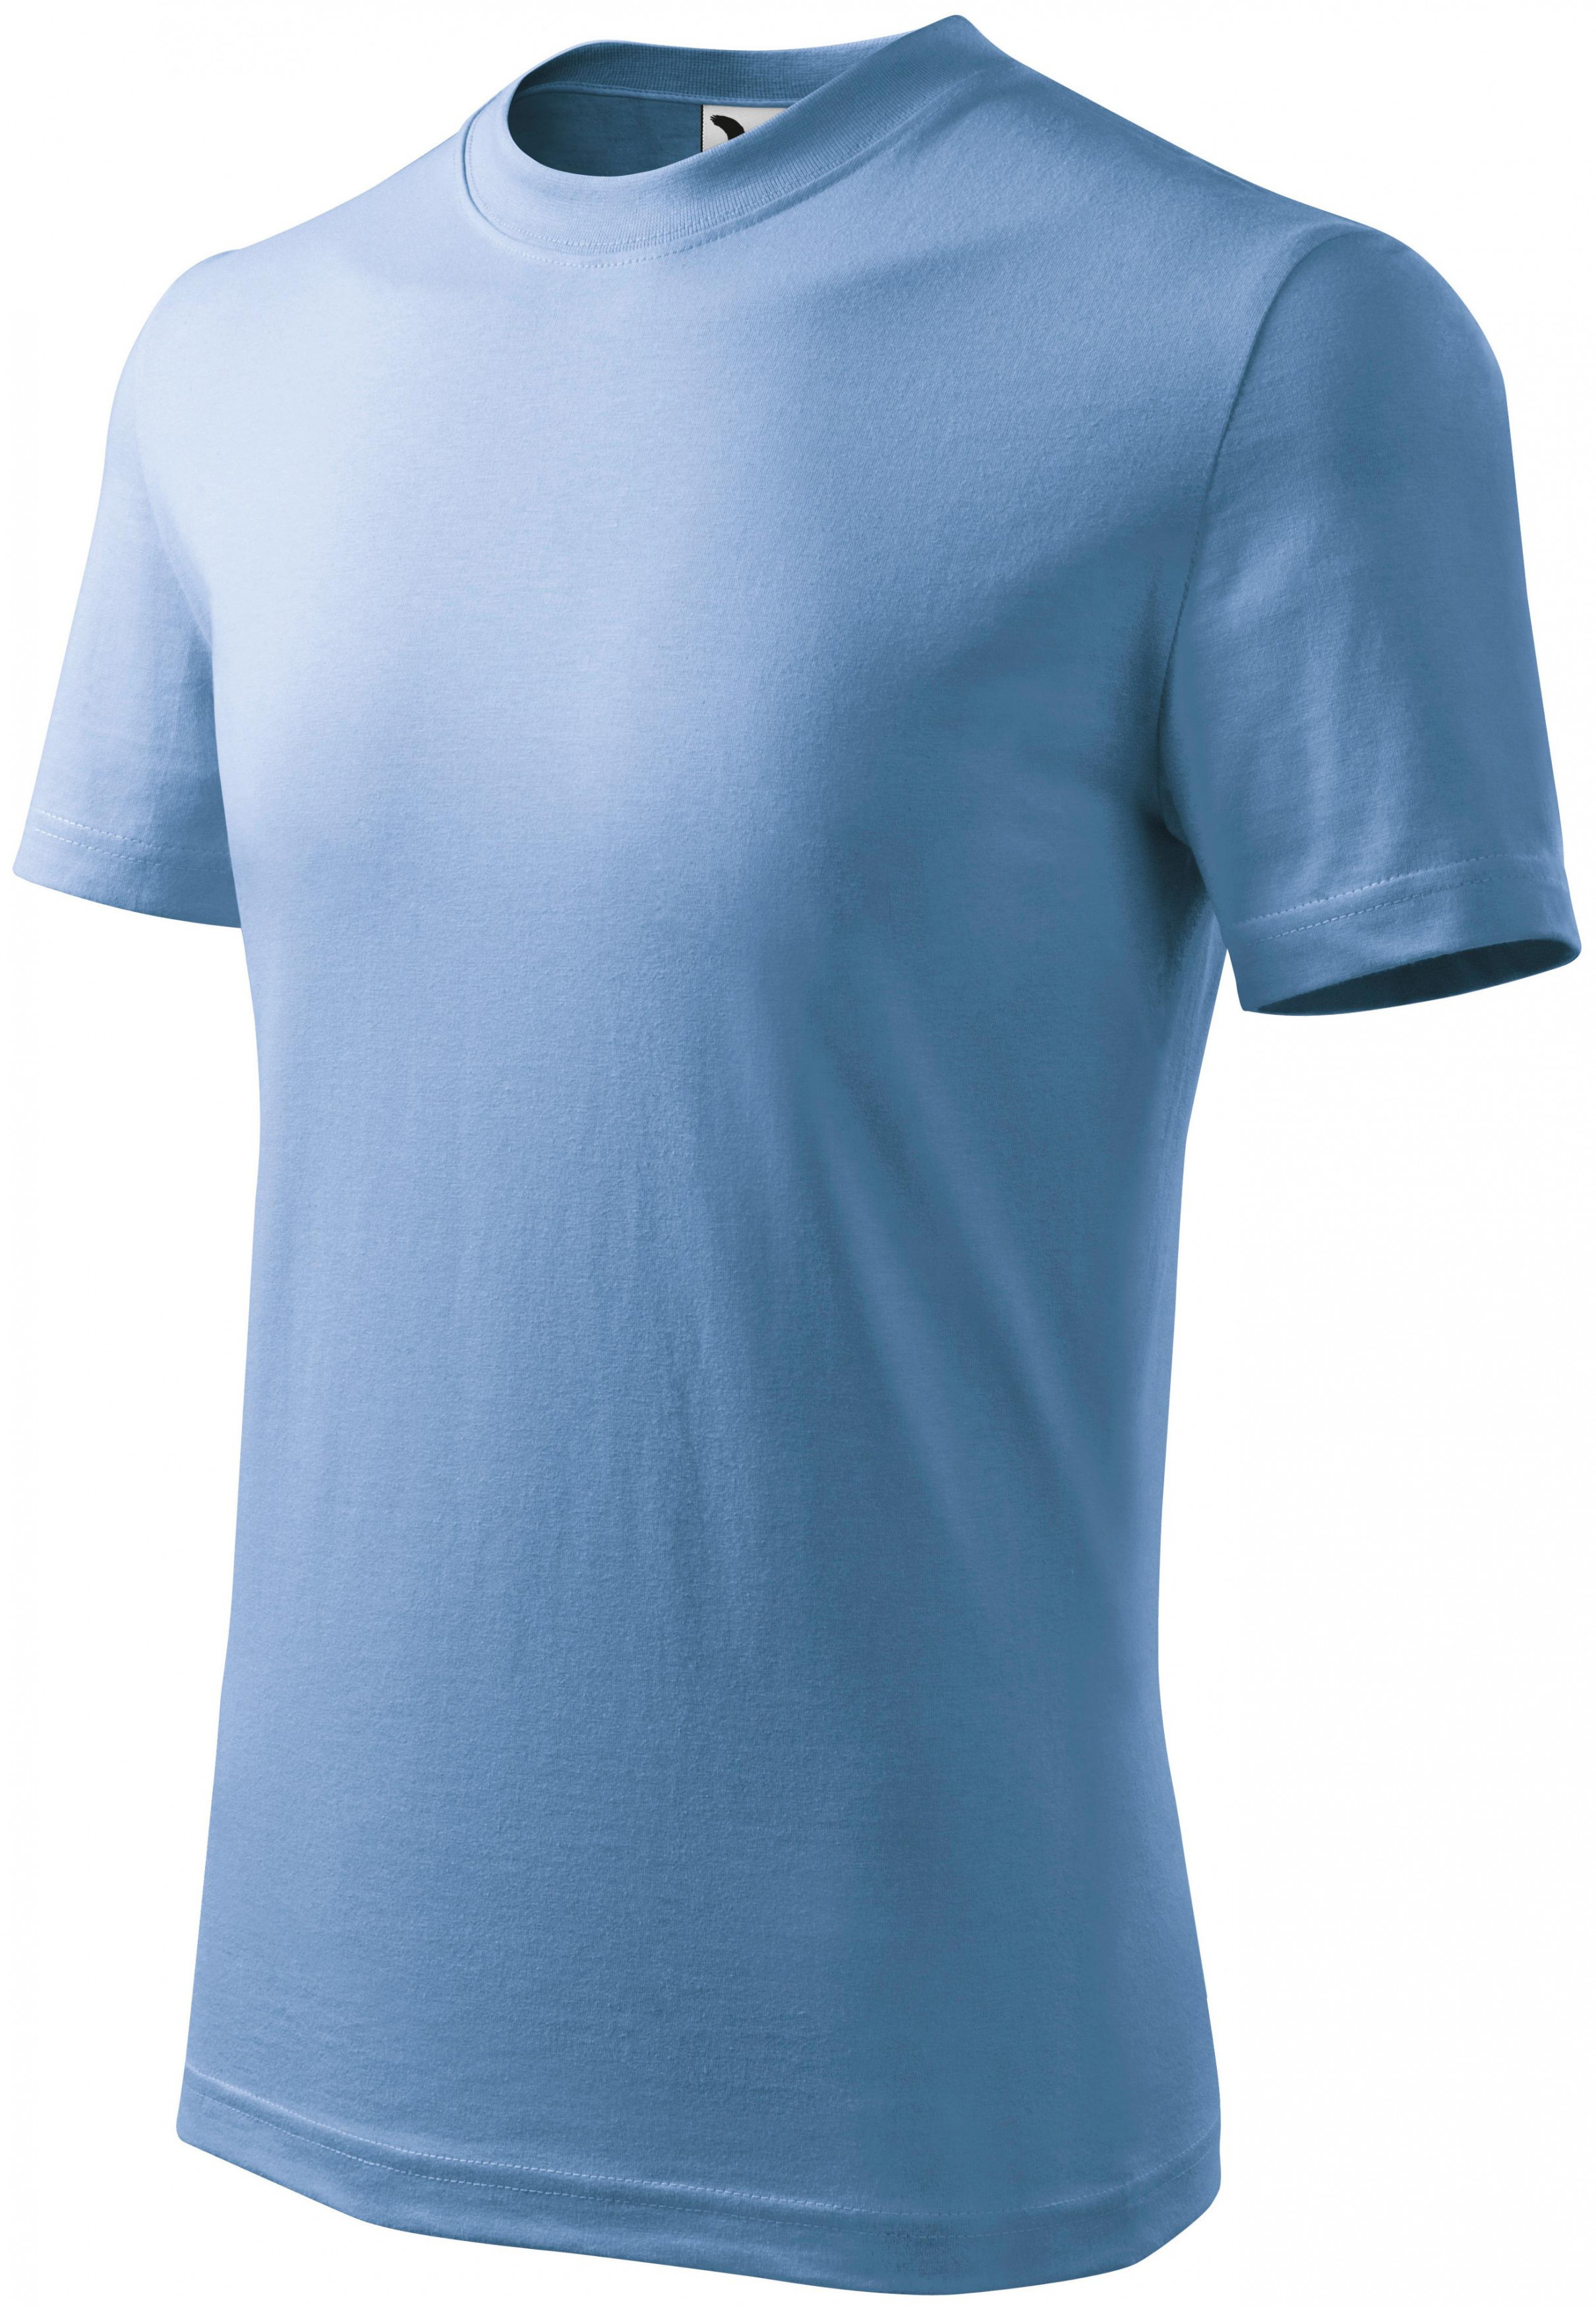 Detské tričko jednoduché, nebeská modrá, 122cm / 6rokov